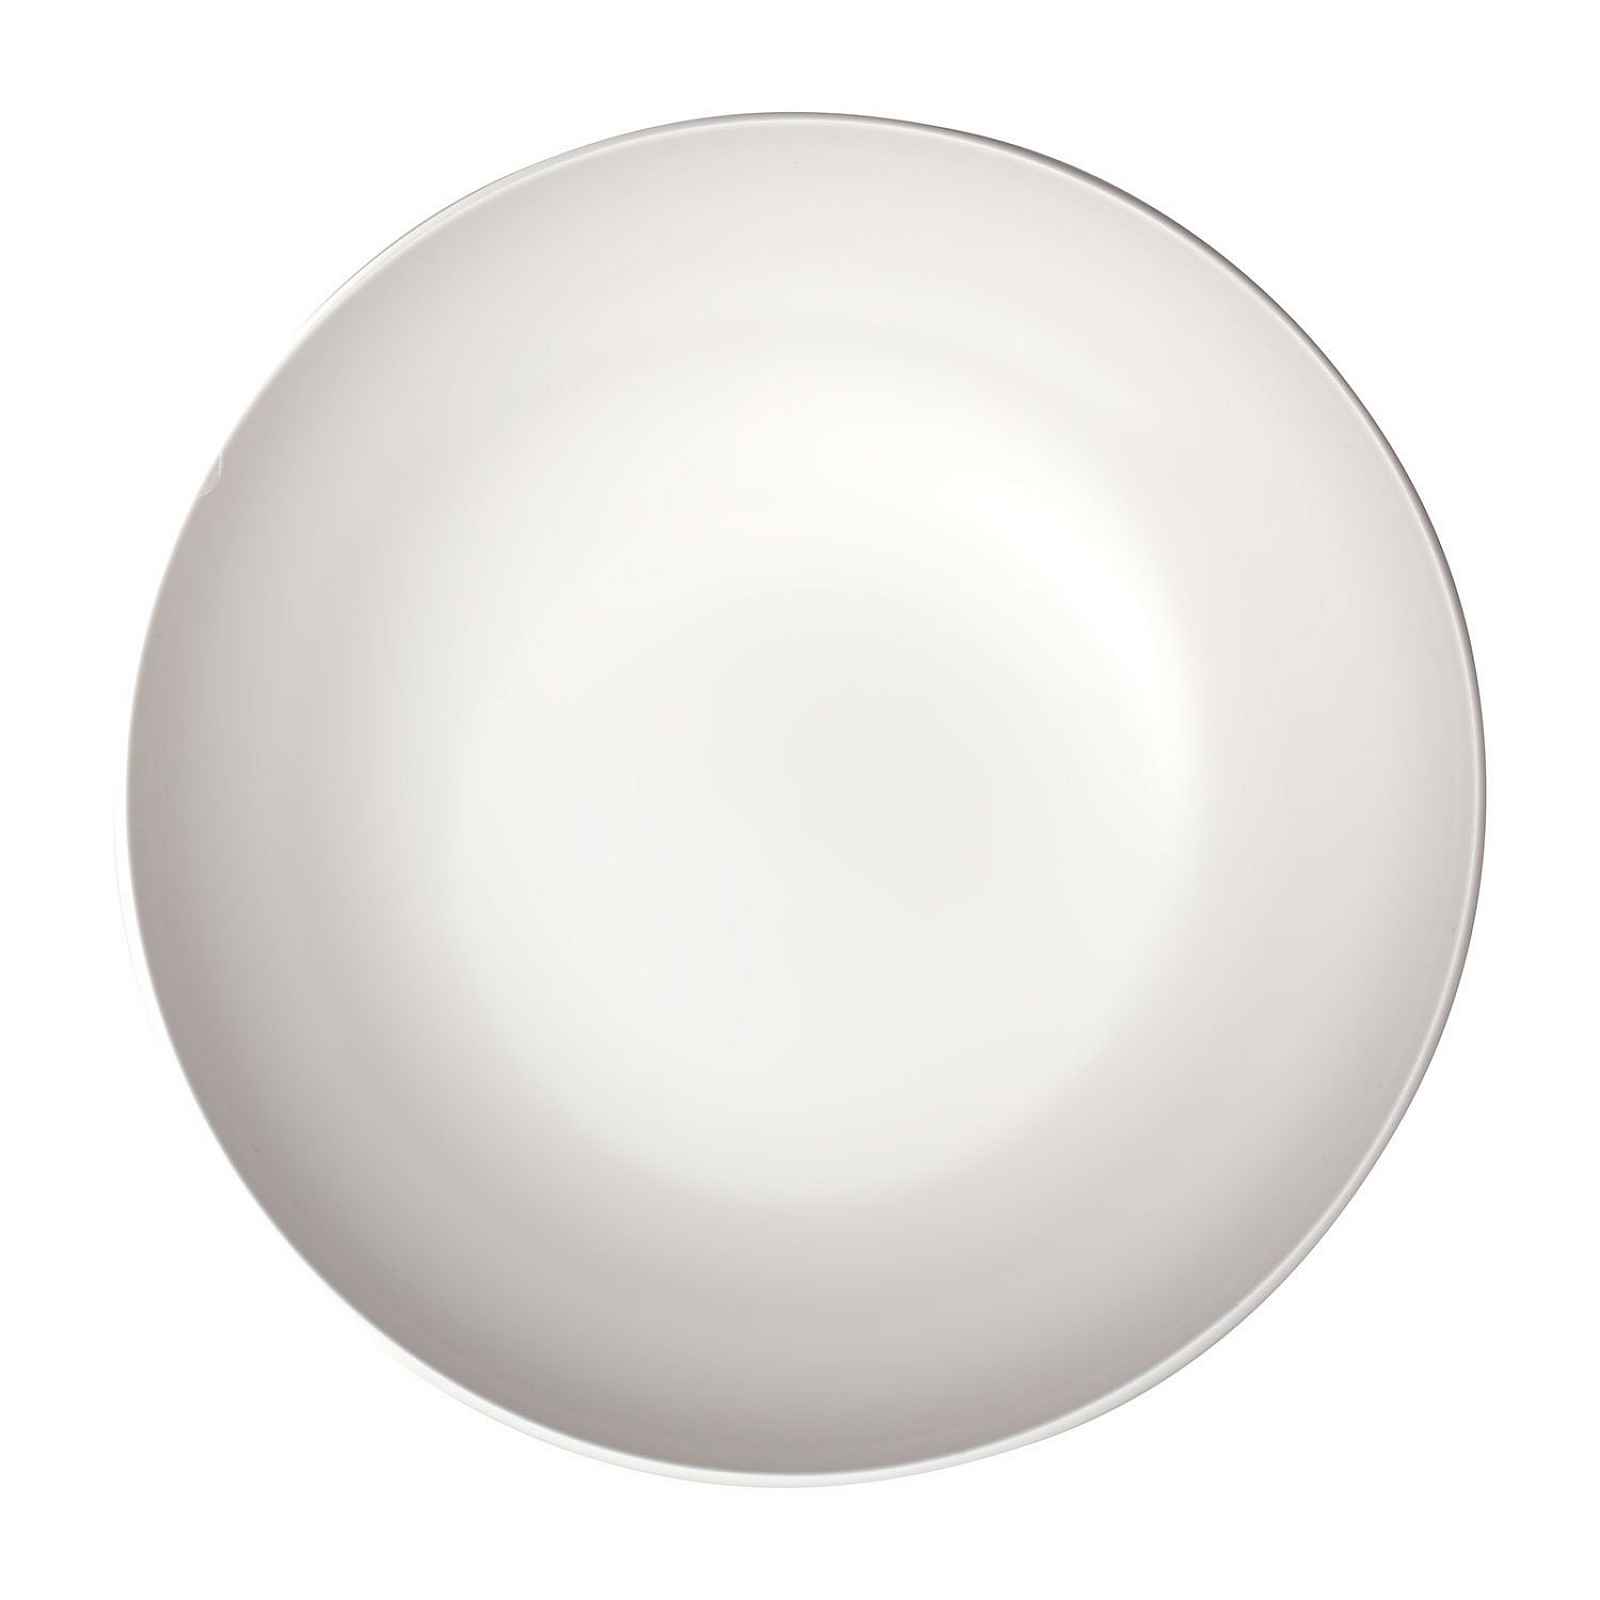 Servírovací bílá porcelánová miska Villeroy & Boch Uni, ⌀ 26 cm